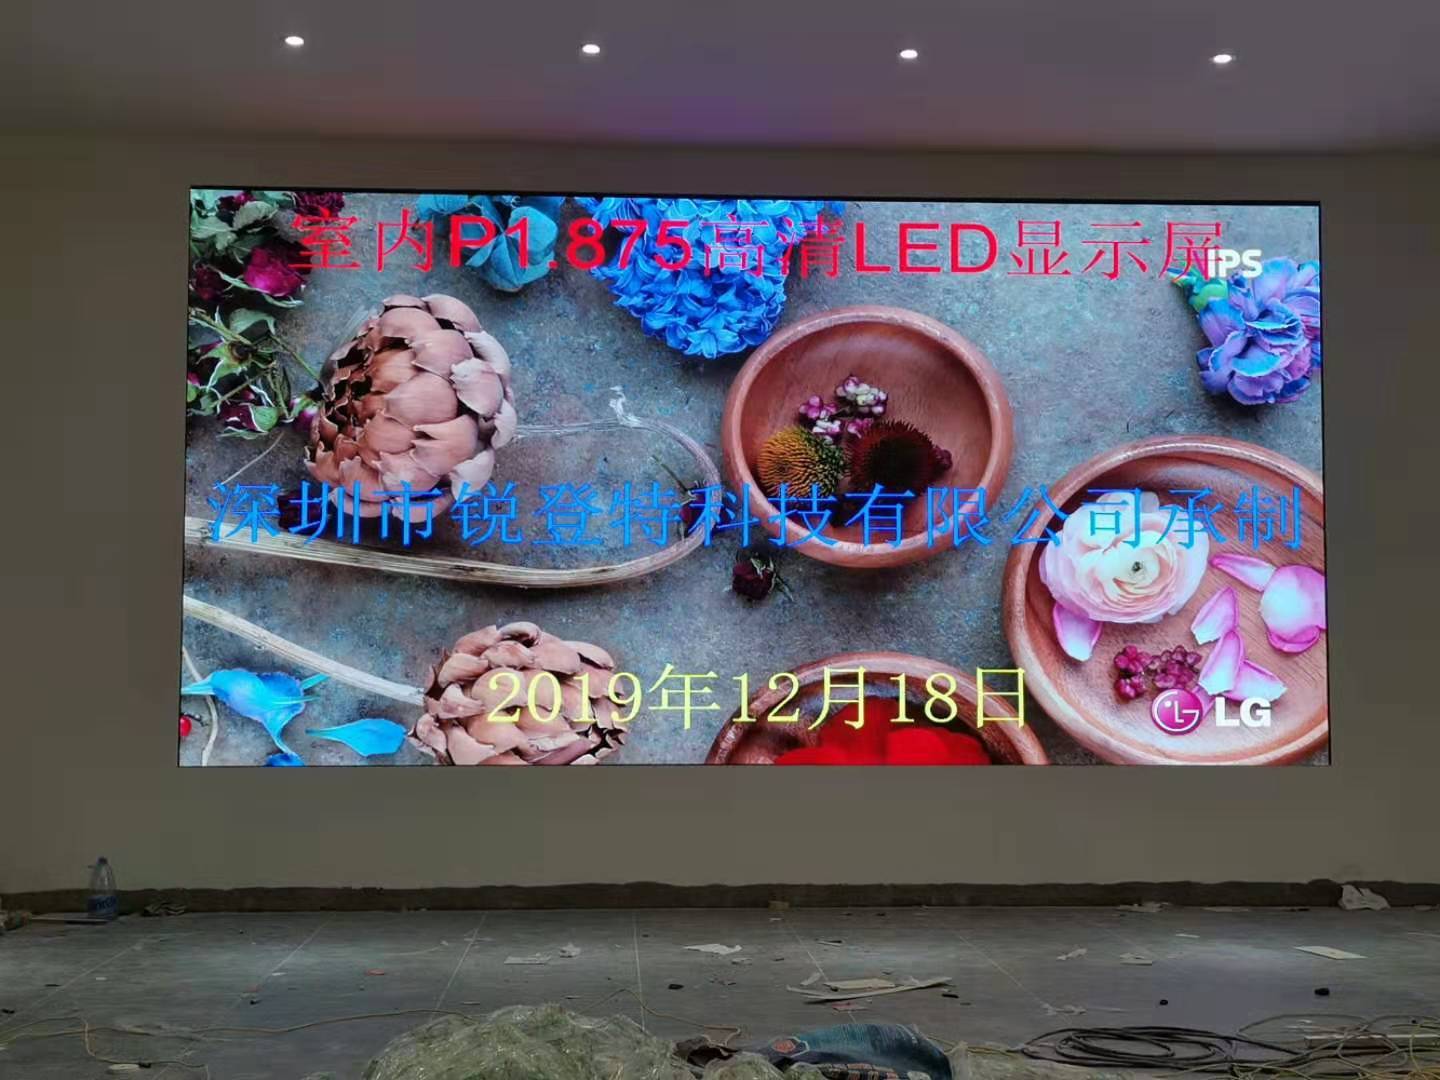 전시회와 회의를 위한 텔레비젼 방송국 영상 벽을 위한 FPP1.875 발광 다이오드 표시